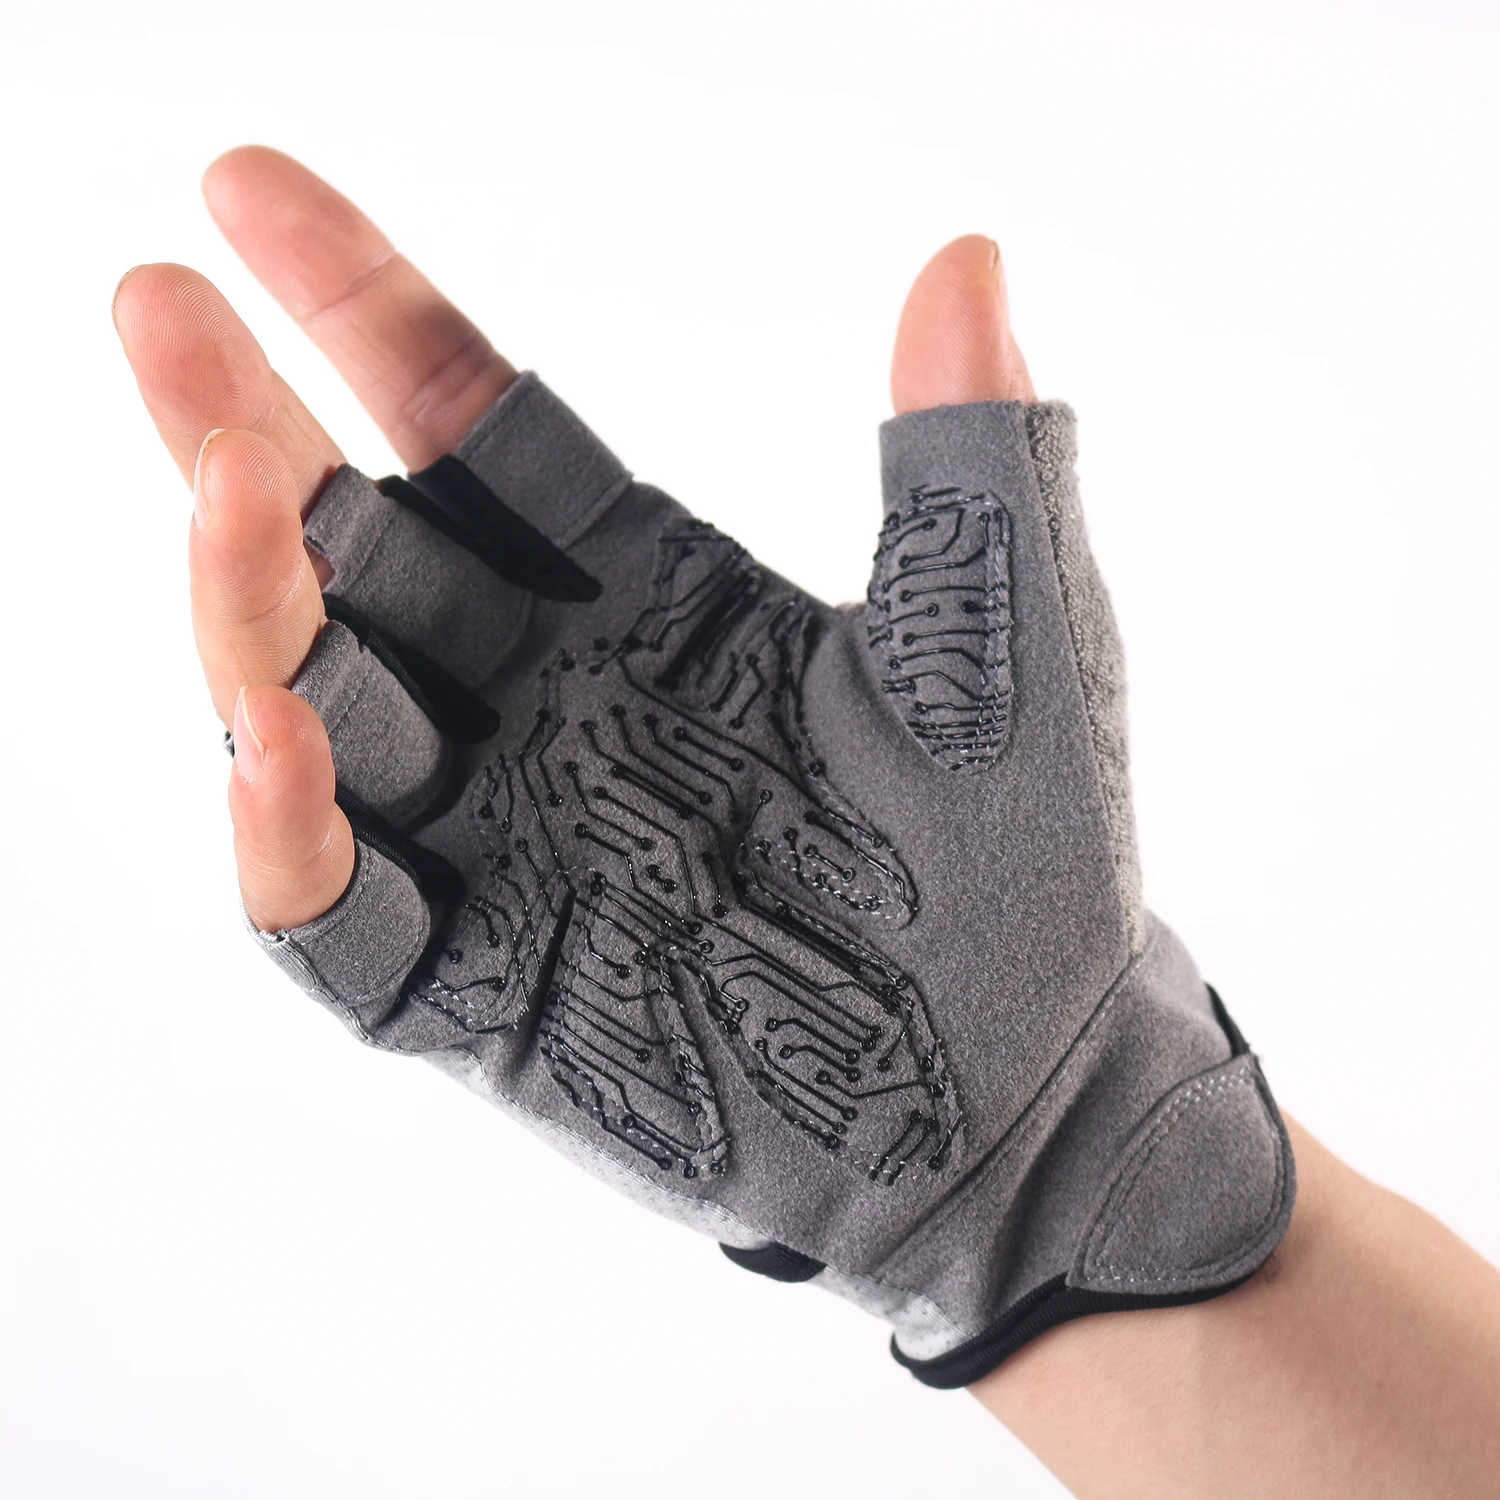 

Перчатки спортивные противоударные с открытыми пальцами, дышащие митенки для фитнеса, тяжелая атлетика, силиконовые перчатки для воркаута на ладони, для велоспорта